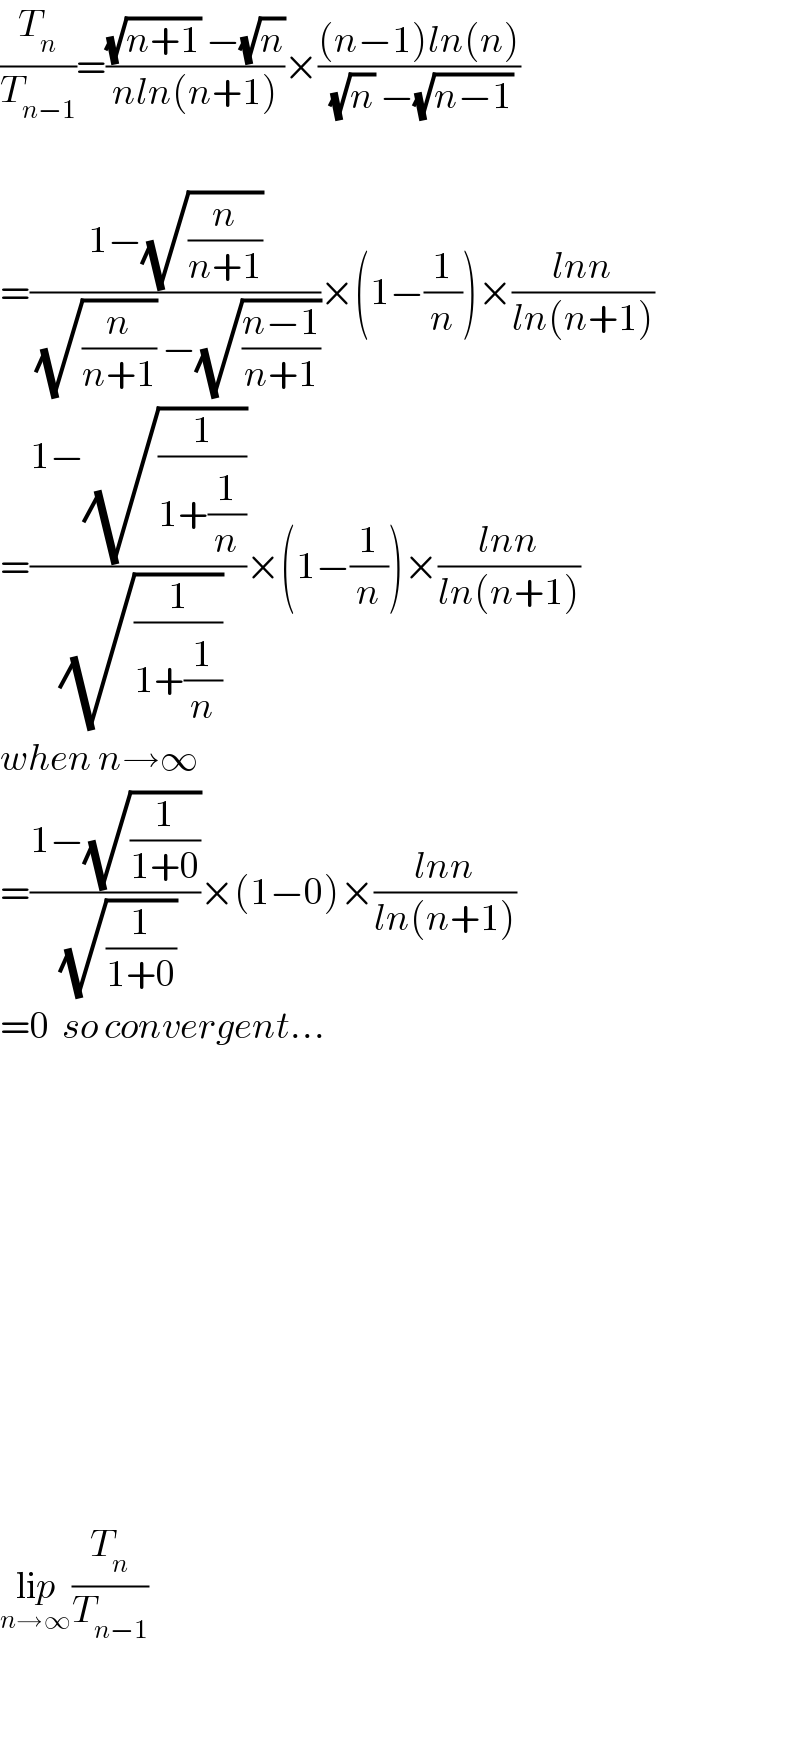 (T_n /T_(n−1) )=(((√(n+1)) −(√n))/(nln(n+1)))×(((n−1)ln(n))/((√n) −(√(n−1))))    =((1−(√(n/(n+1))))/((√(n/(n+1))) −(√((n−1)/(n+1)))))×(1−(1/n))×((lnn)/(ln(n+1)))  =((1−(√(1/(1+(1/n)))))/(√(1/(1+(1/n)))))×(1−(1/n))×((lnn)/(ln(n+1)))  when n→∞  =((1−(√(1/(1+0))))/(√(1/(1+0))))×(1−0)×((lnn)/(ln(n+1)))  =0  so convergent...                    lip_(n→∞) (T_n /T_(n−1) )    